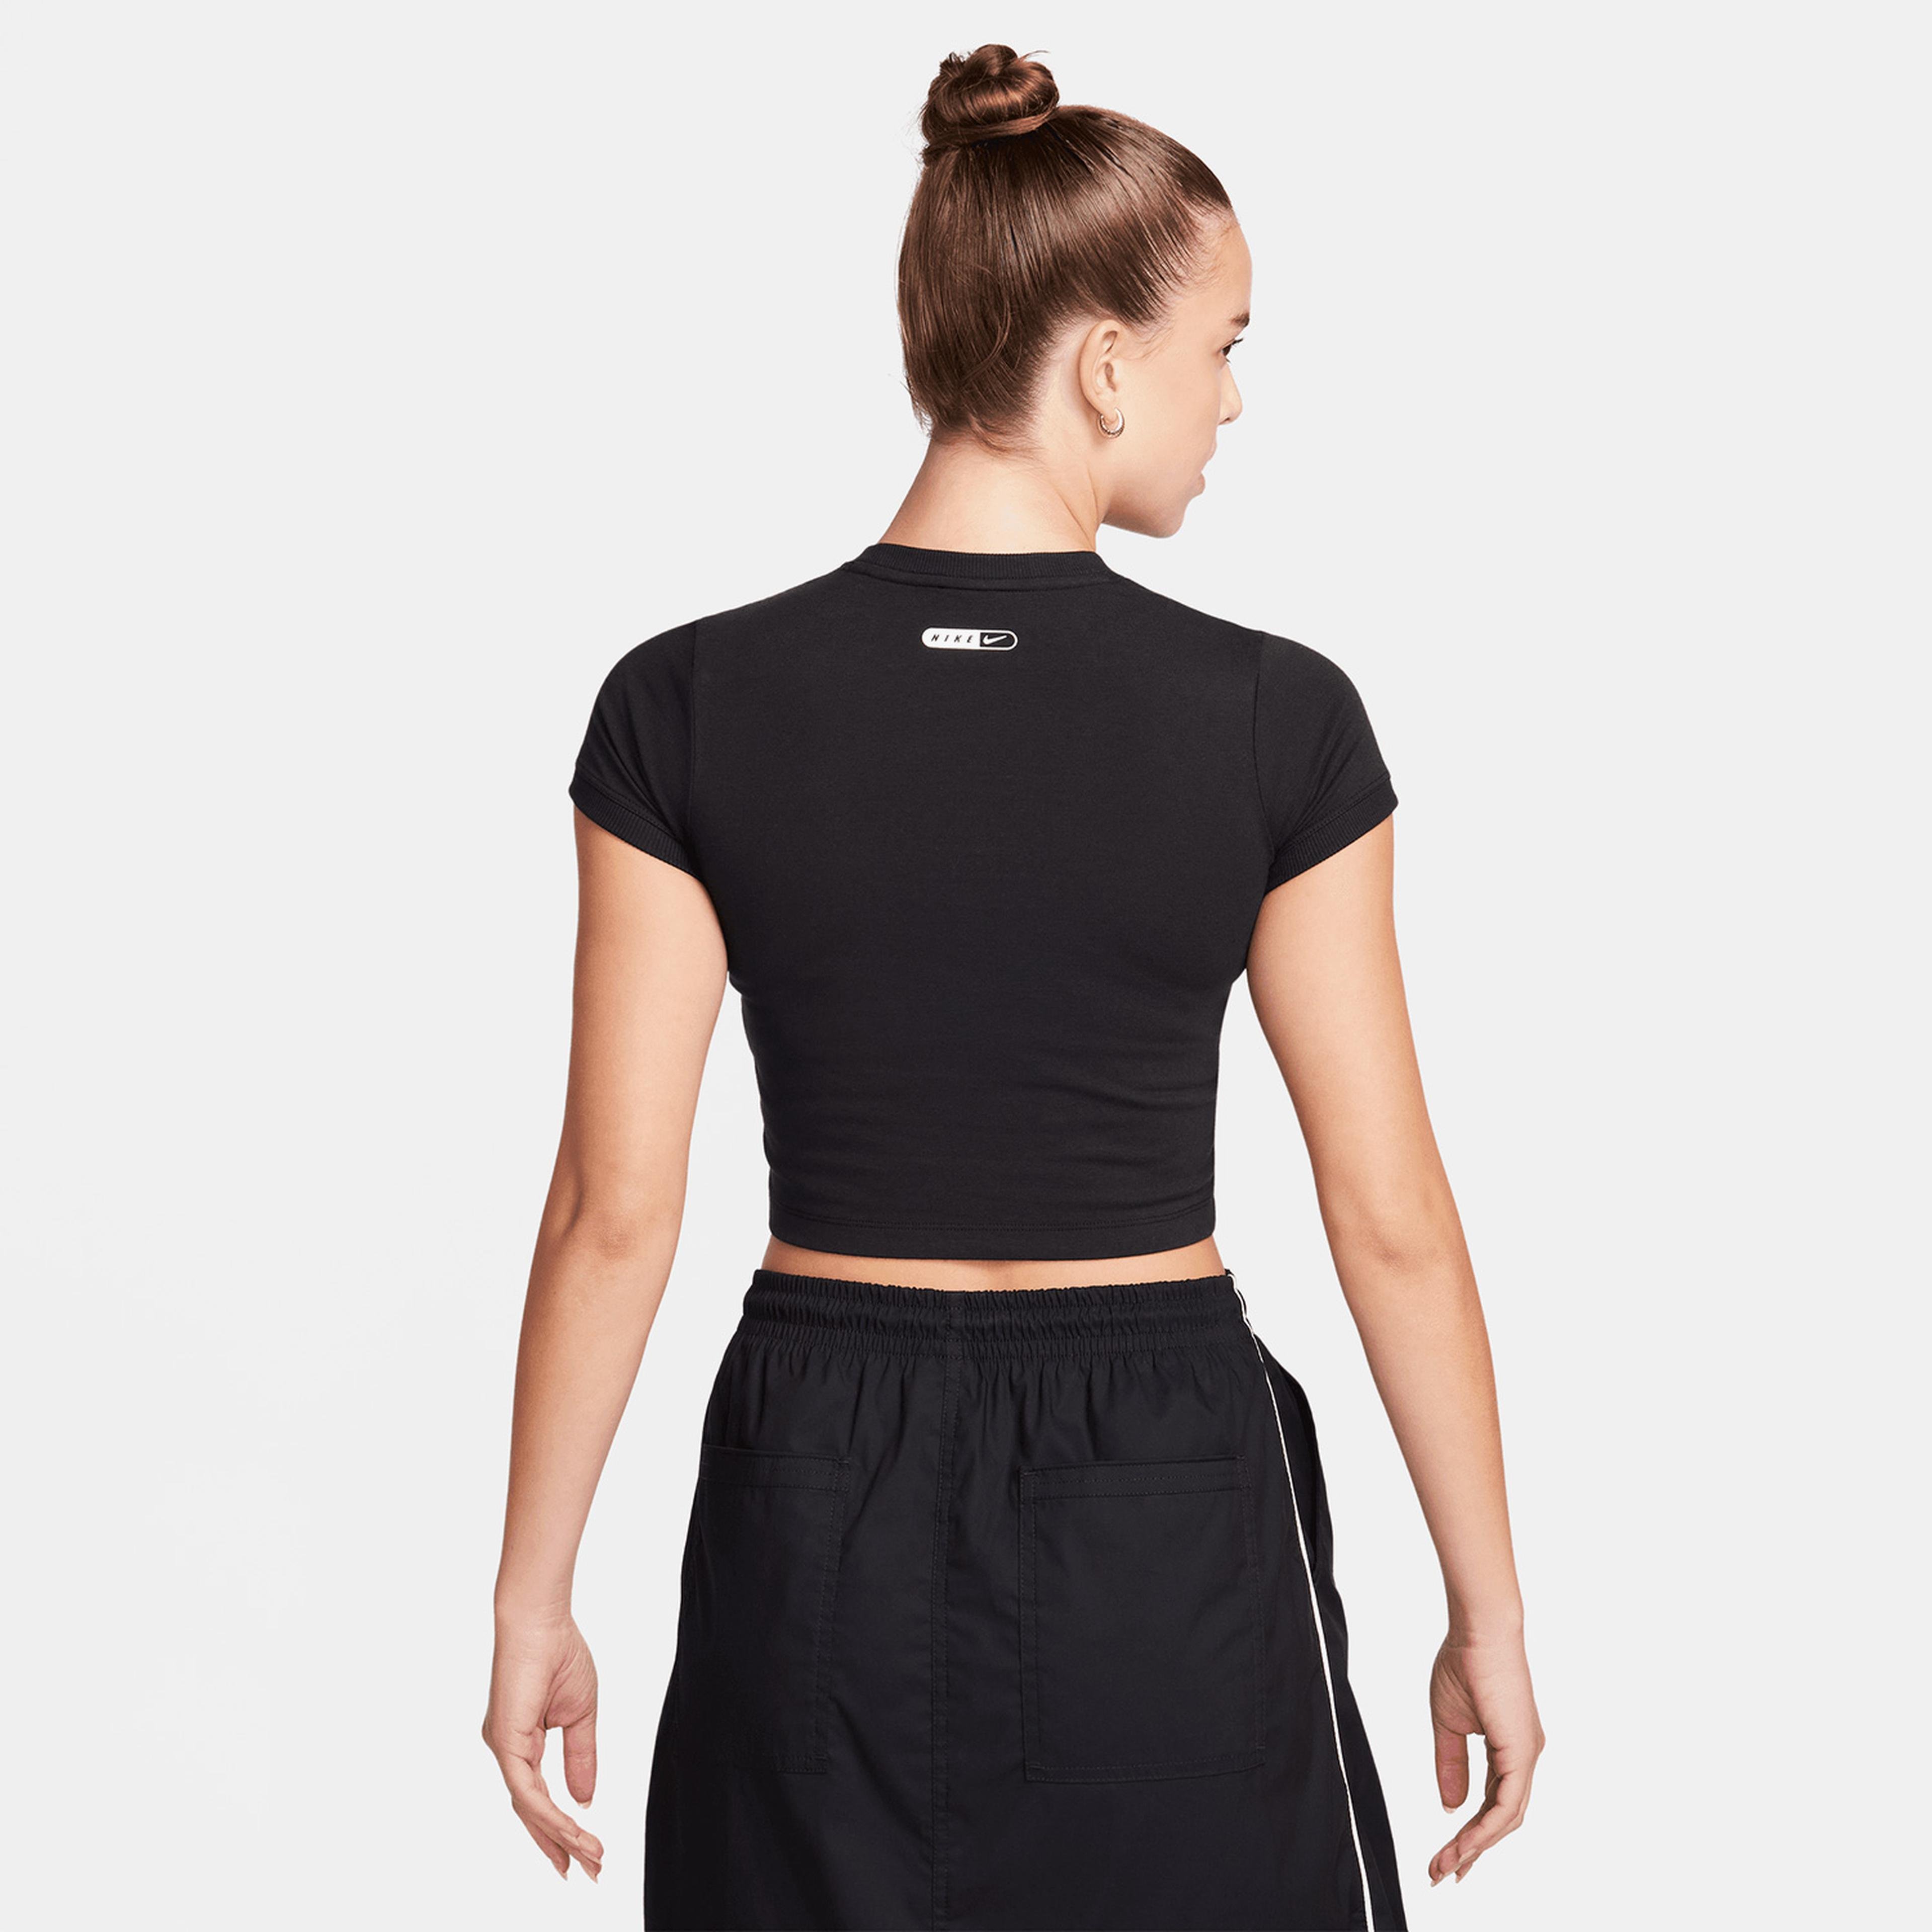 Nike Sportswear Kadın Siyah T-Shirt